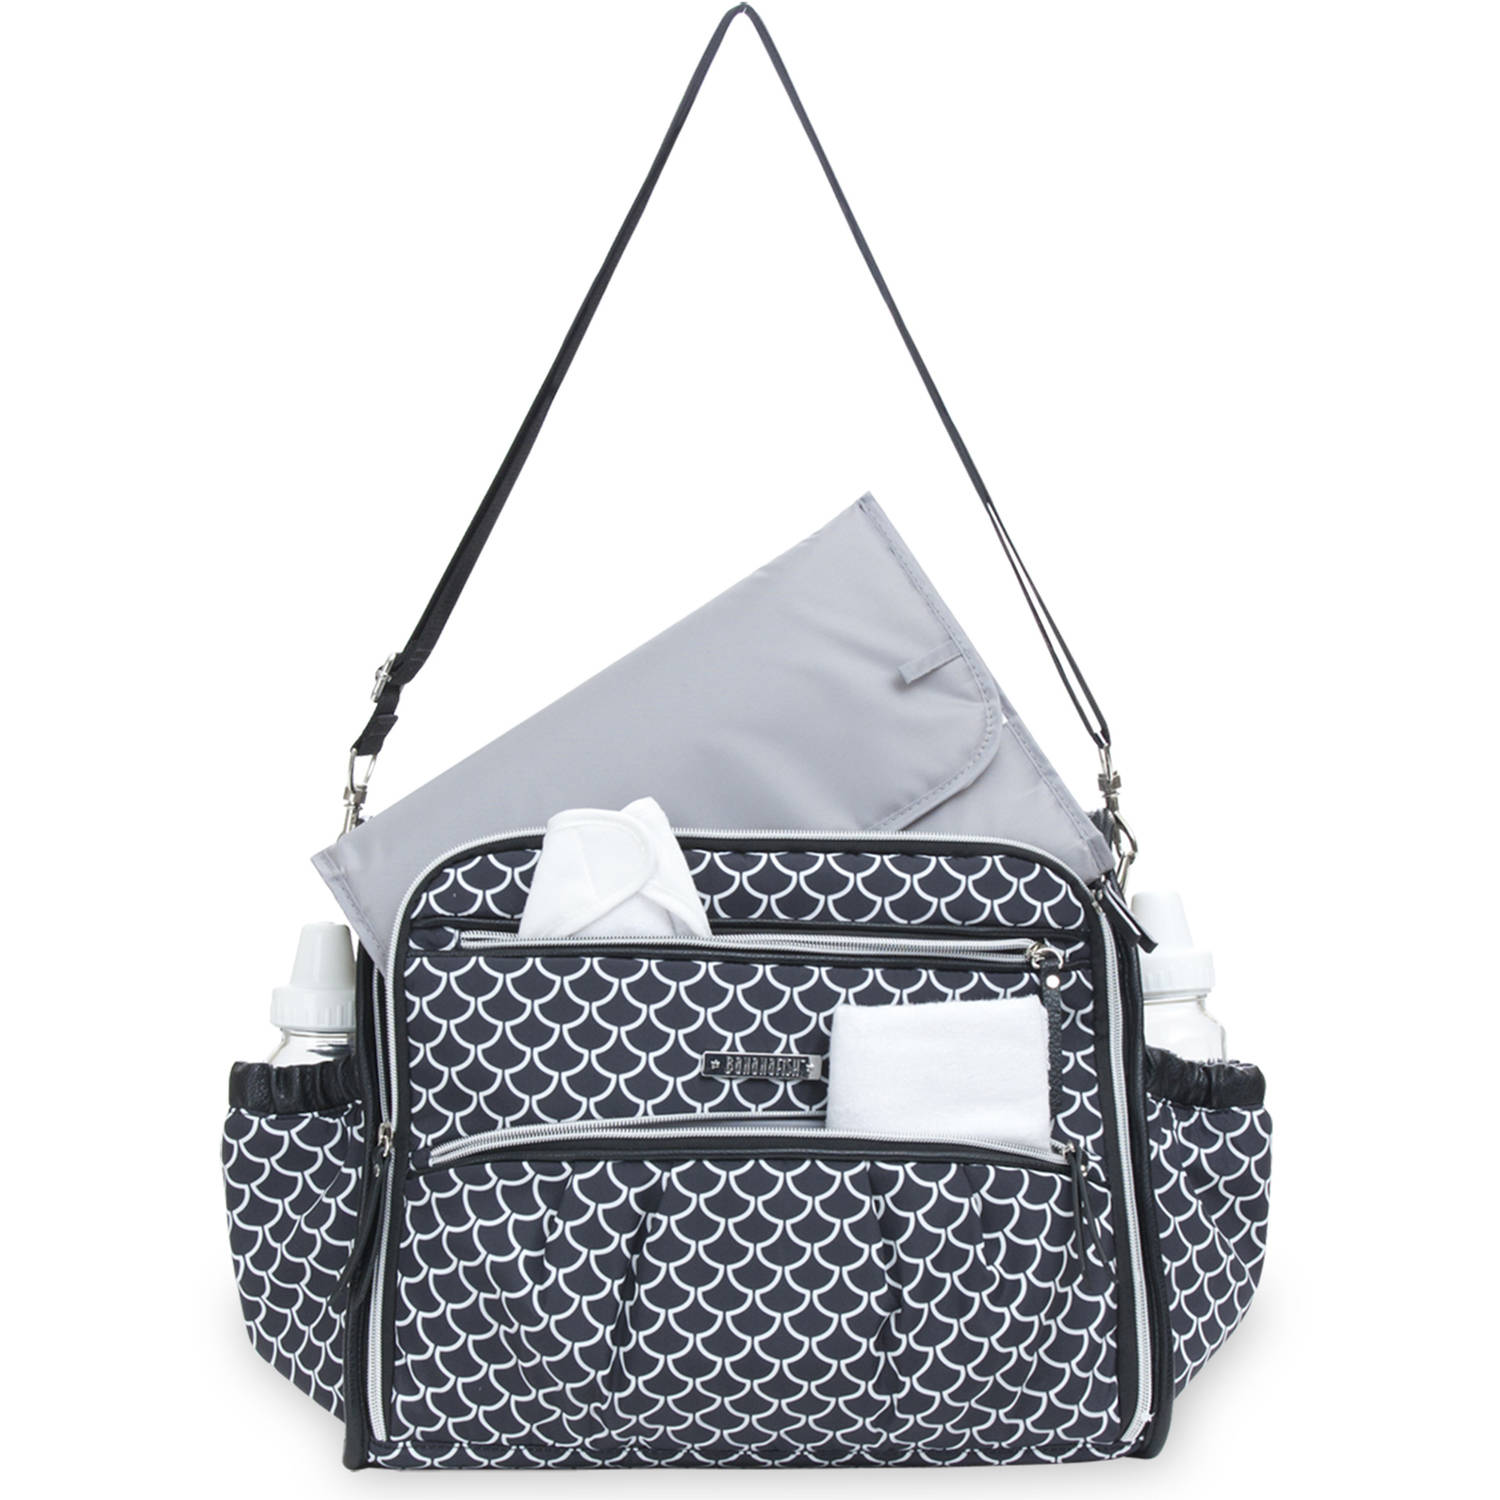 Bananafish Studio Adjustable Shoulder Strap Zipper Pockets Messenger Diaper Bag, Black and White - image 6 of 7